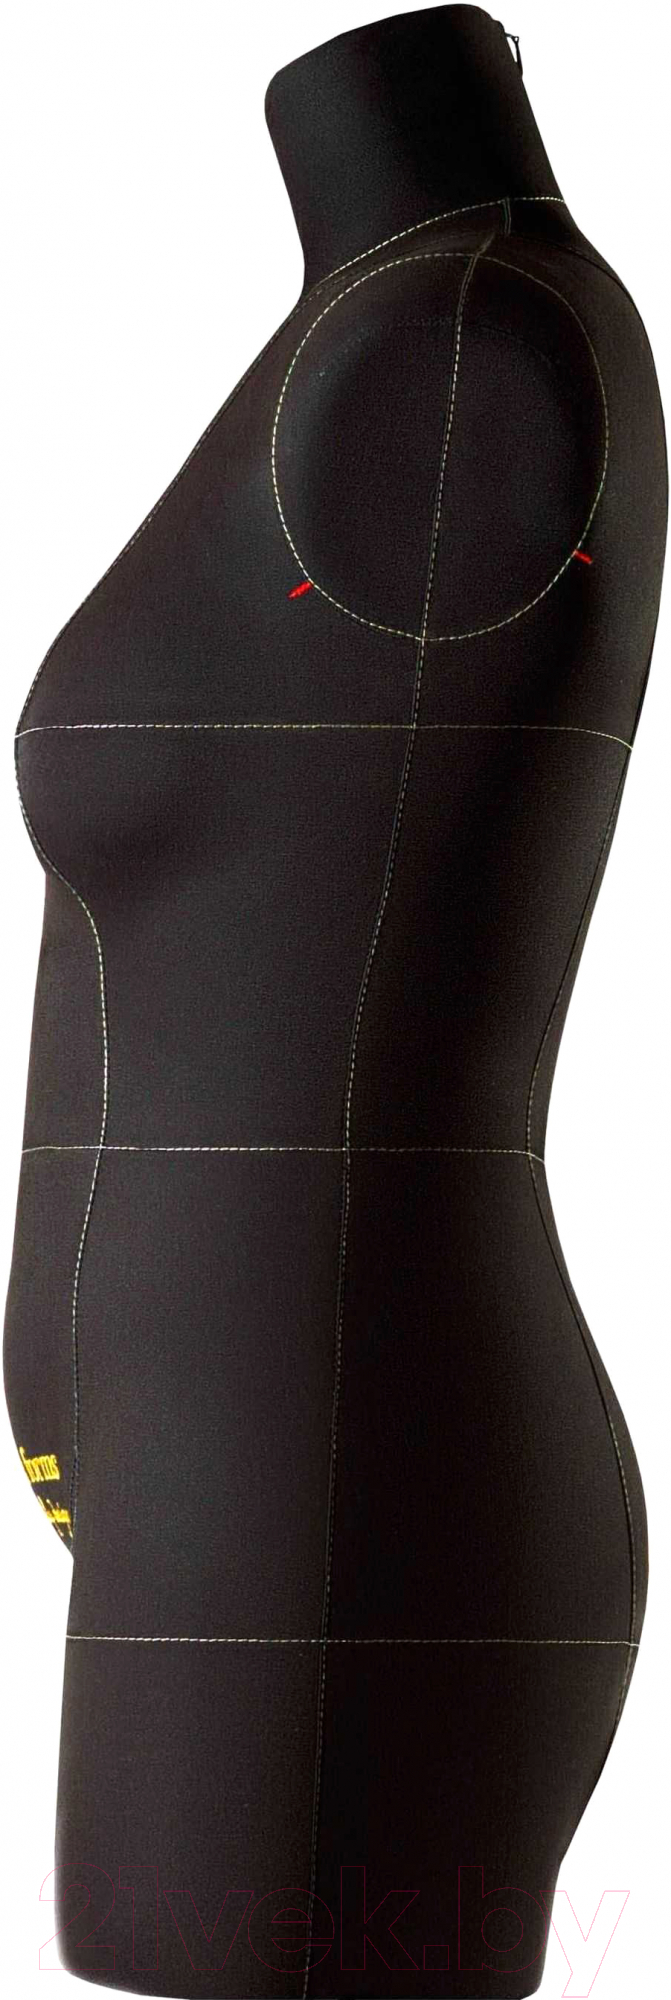 Манекен портновский Royal Dress Forms Monica+ стойка Милан (черный, размер 48)